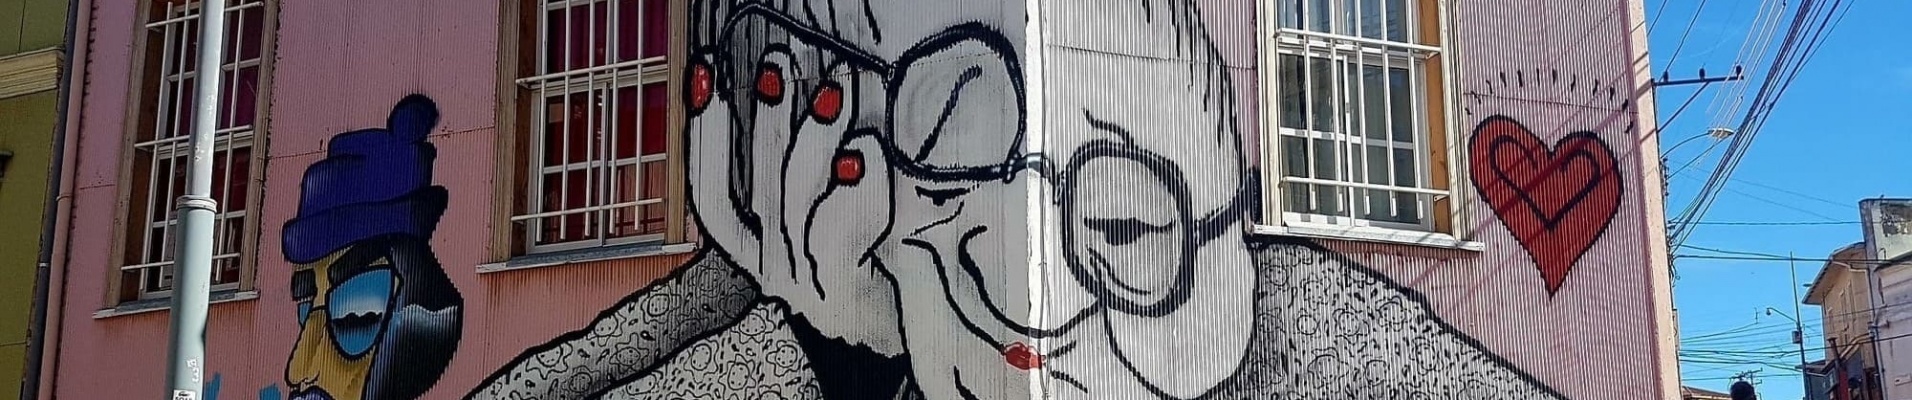 Voyage de noce au Chili : découvrez Valparaiso et son fabuleux street art